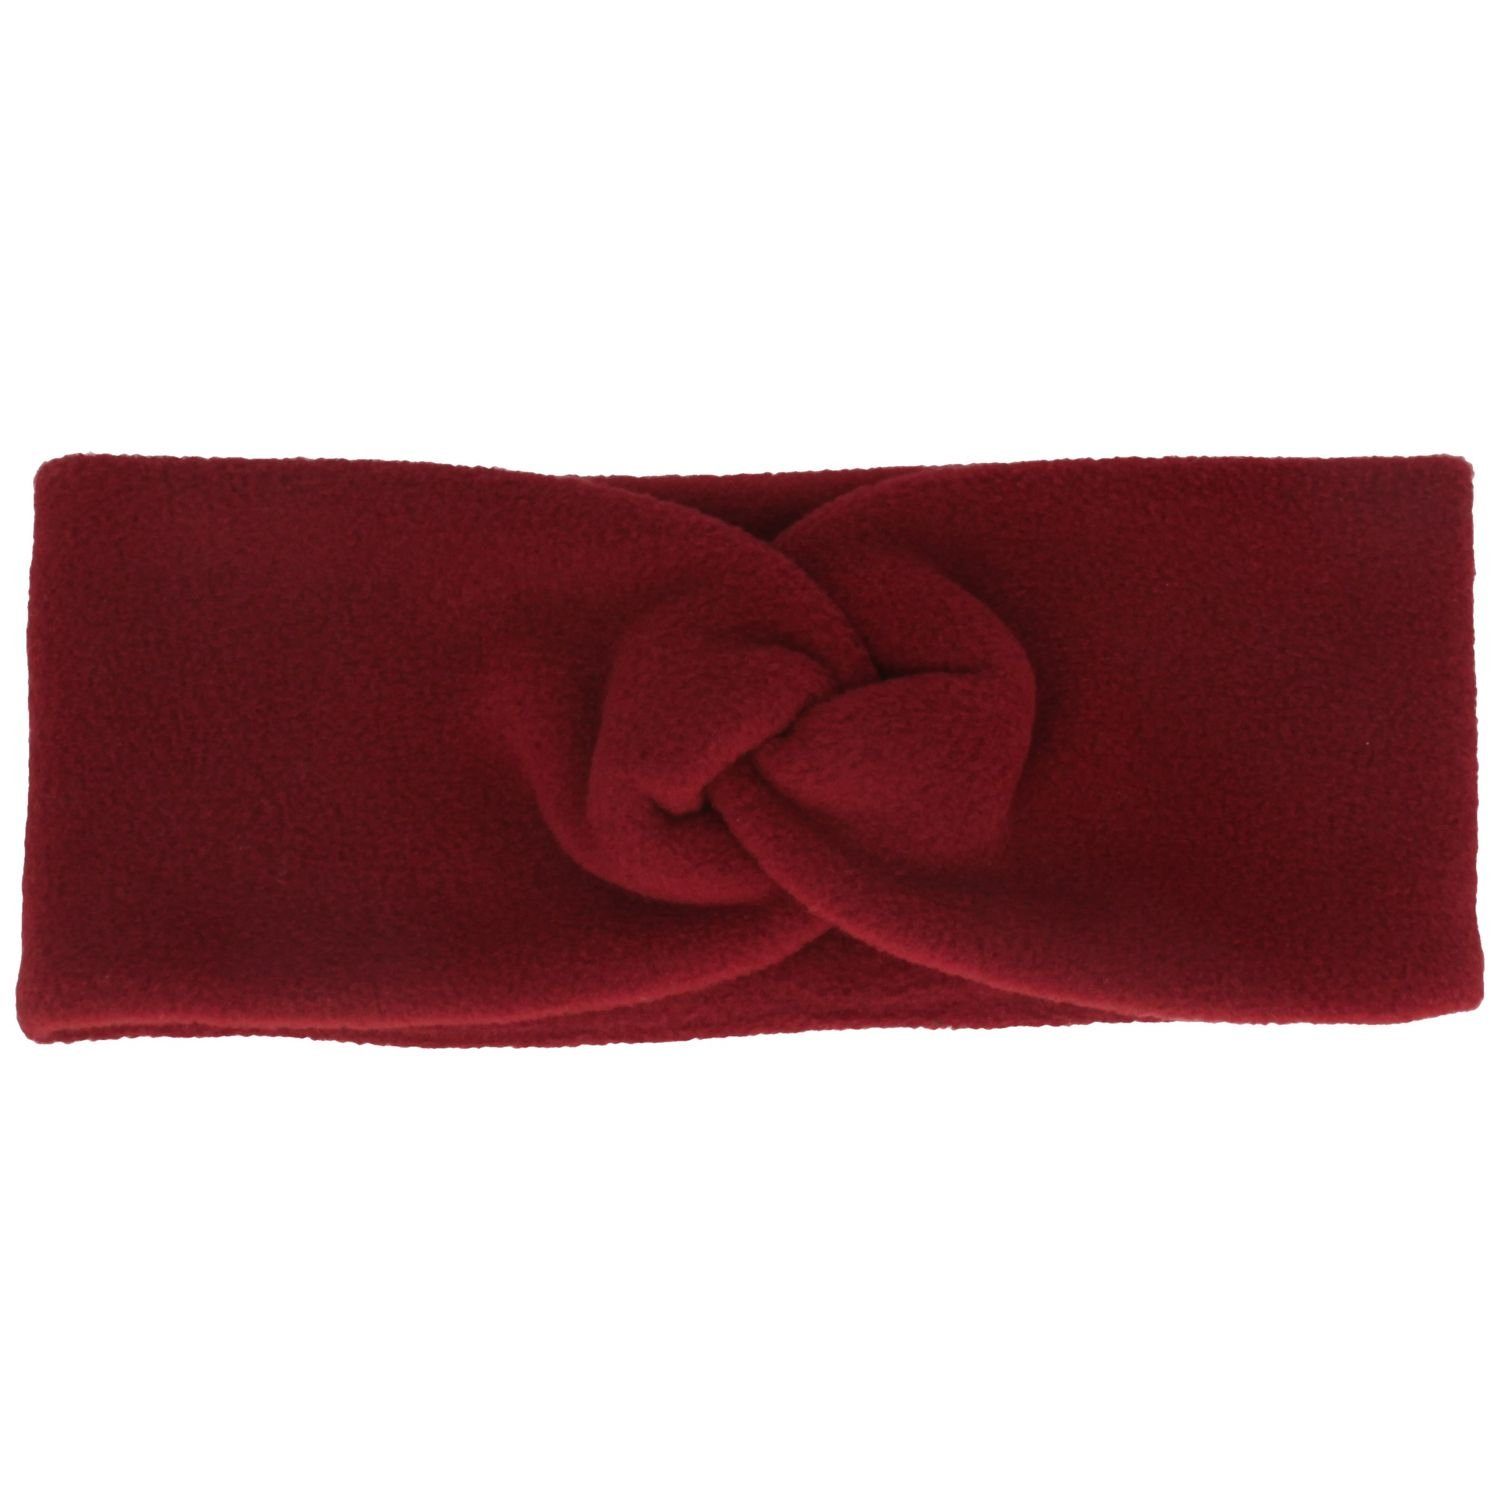 Loevenich Stirnband, karo 0519-dark red